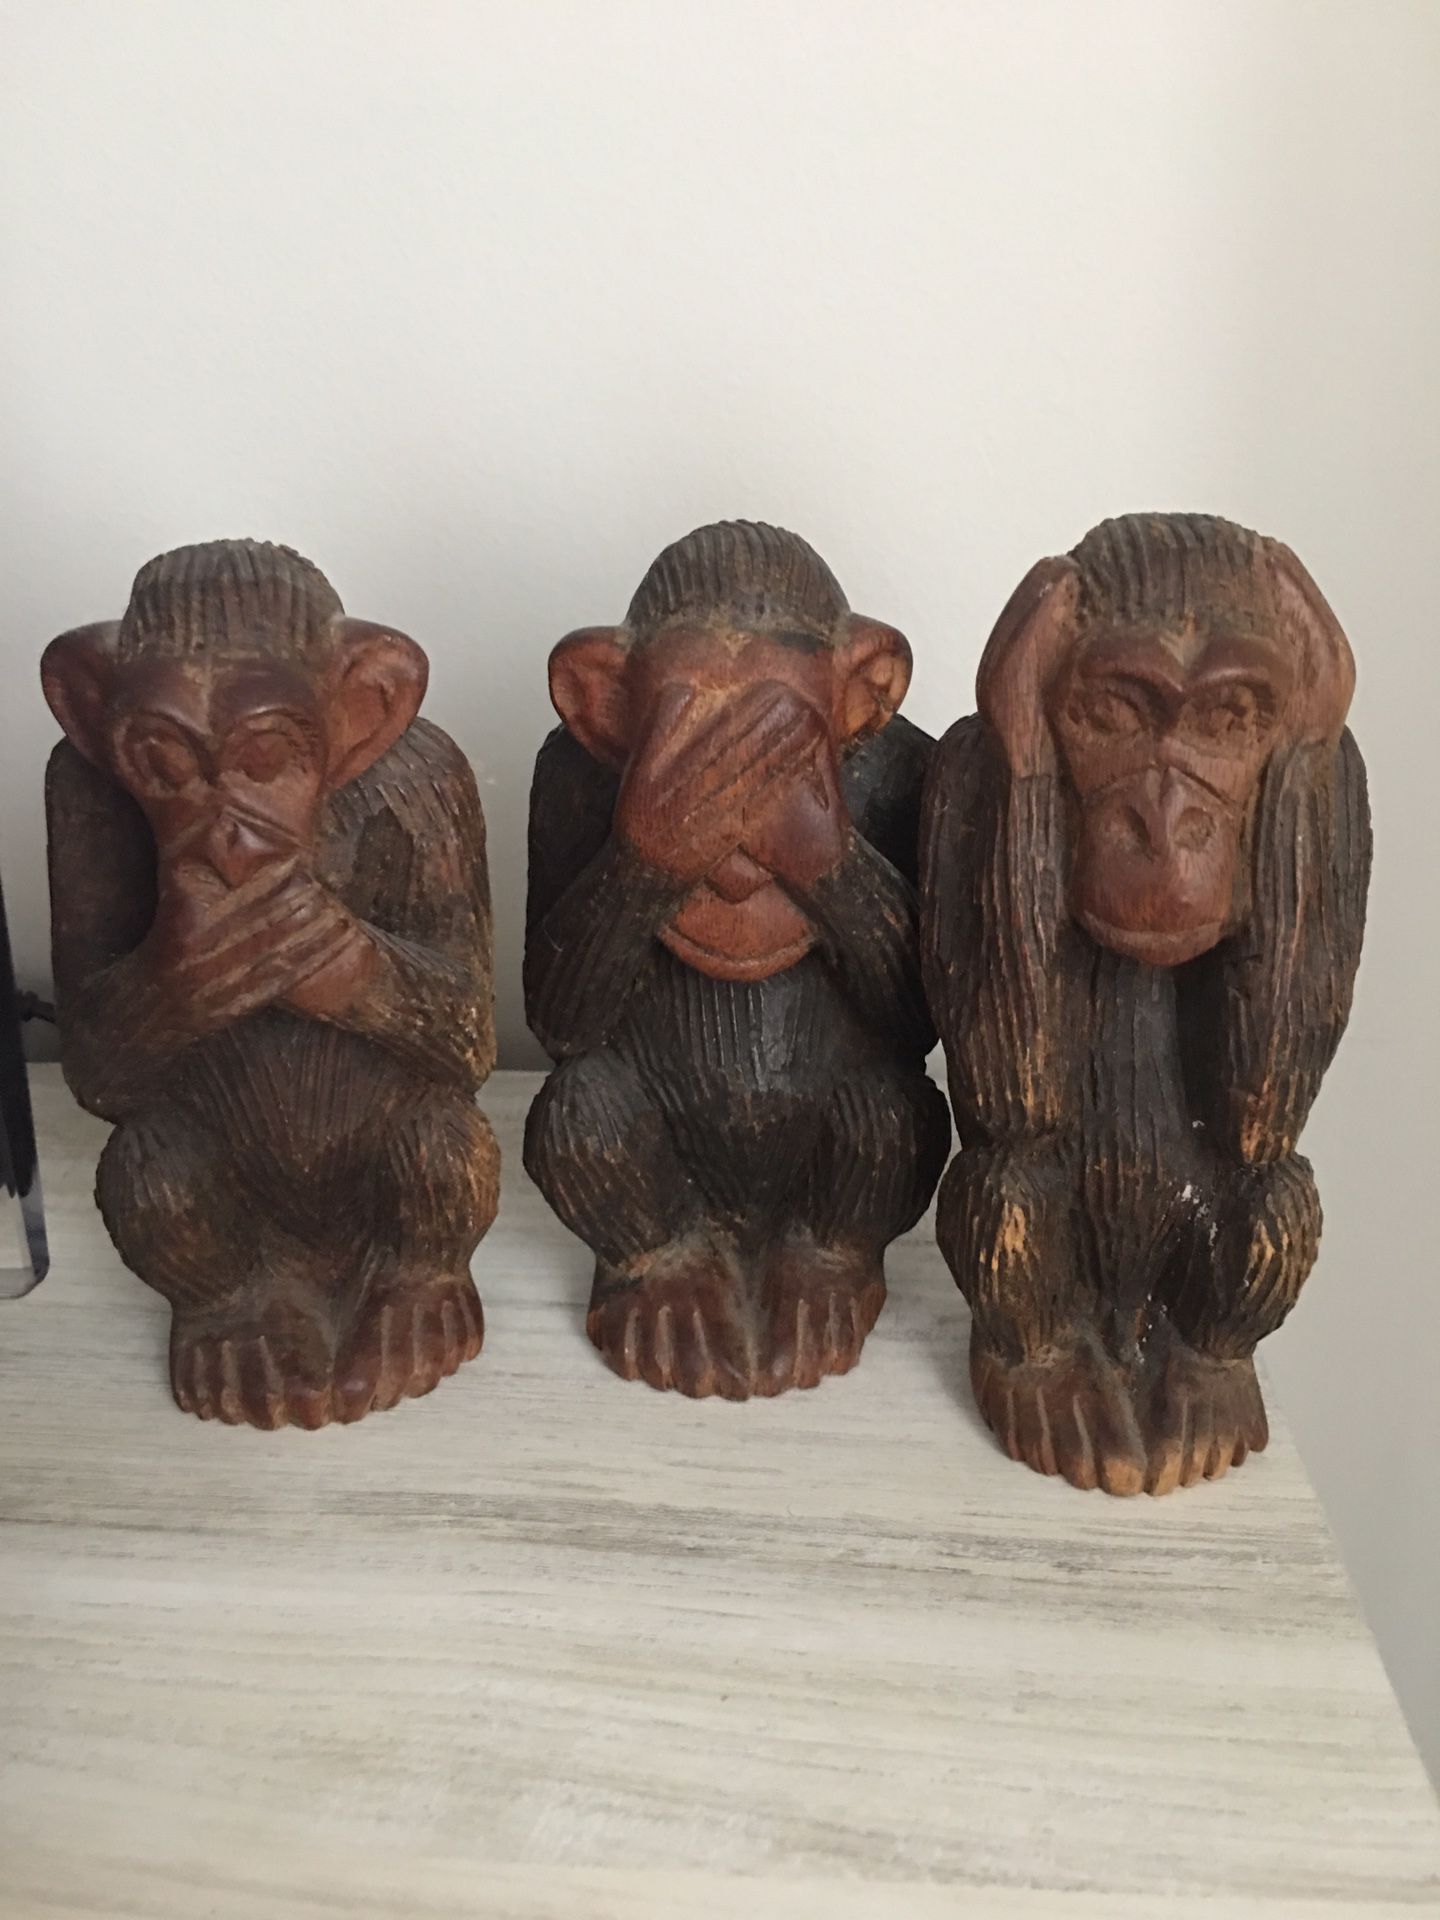 House decor - 3 wise monkeys